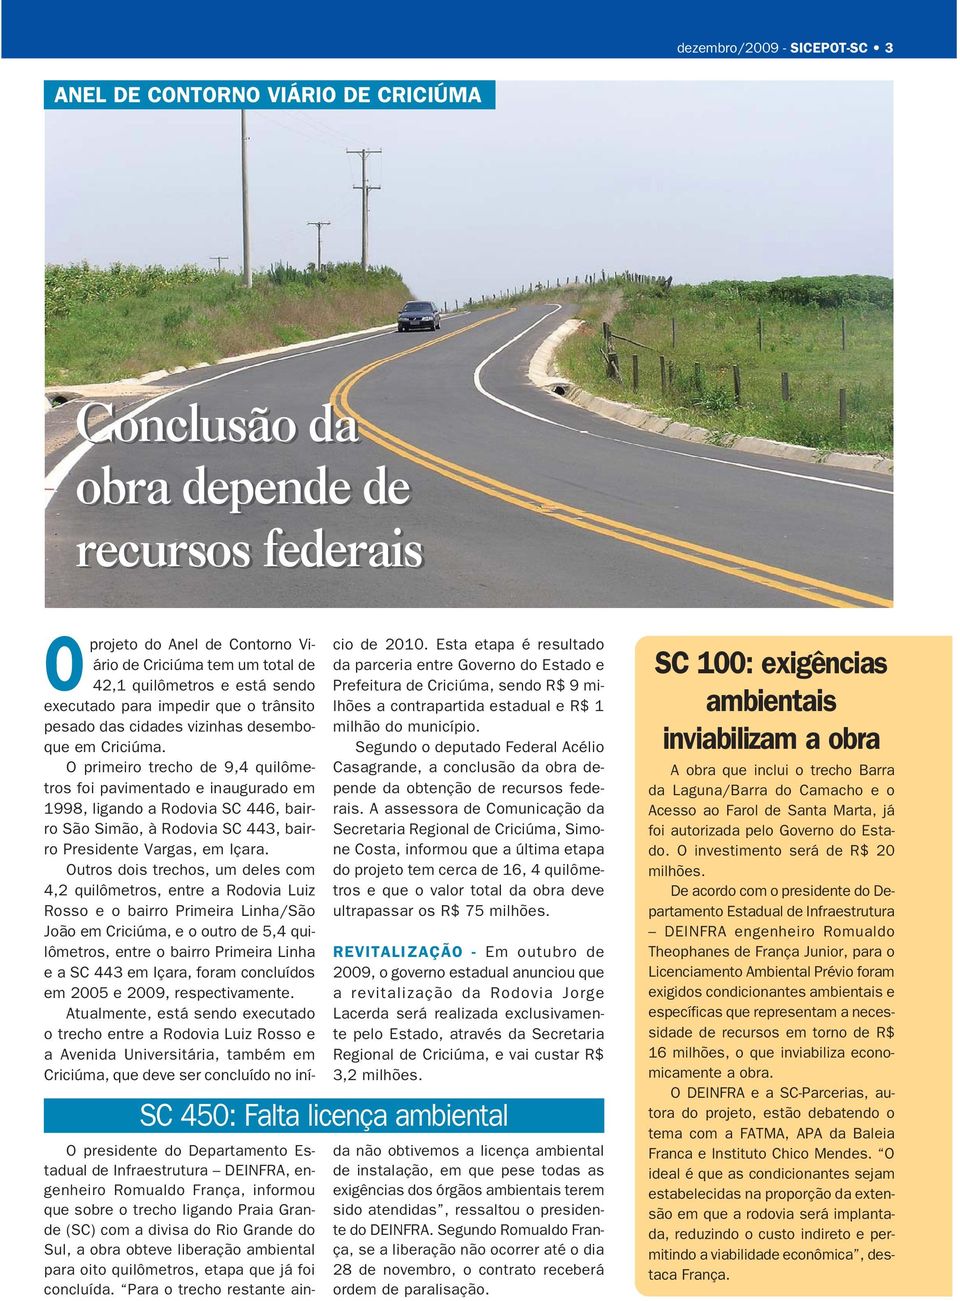 O primeiro trecho de 9,4 quilômetros foi pavimentado e inaugurado em 1998, ligando a Rodovia SC 446, bairro São Simão, à Rodovia SC 443, bairro Presidente Vargas, em Içara.